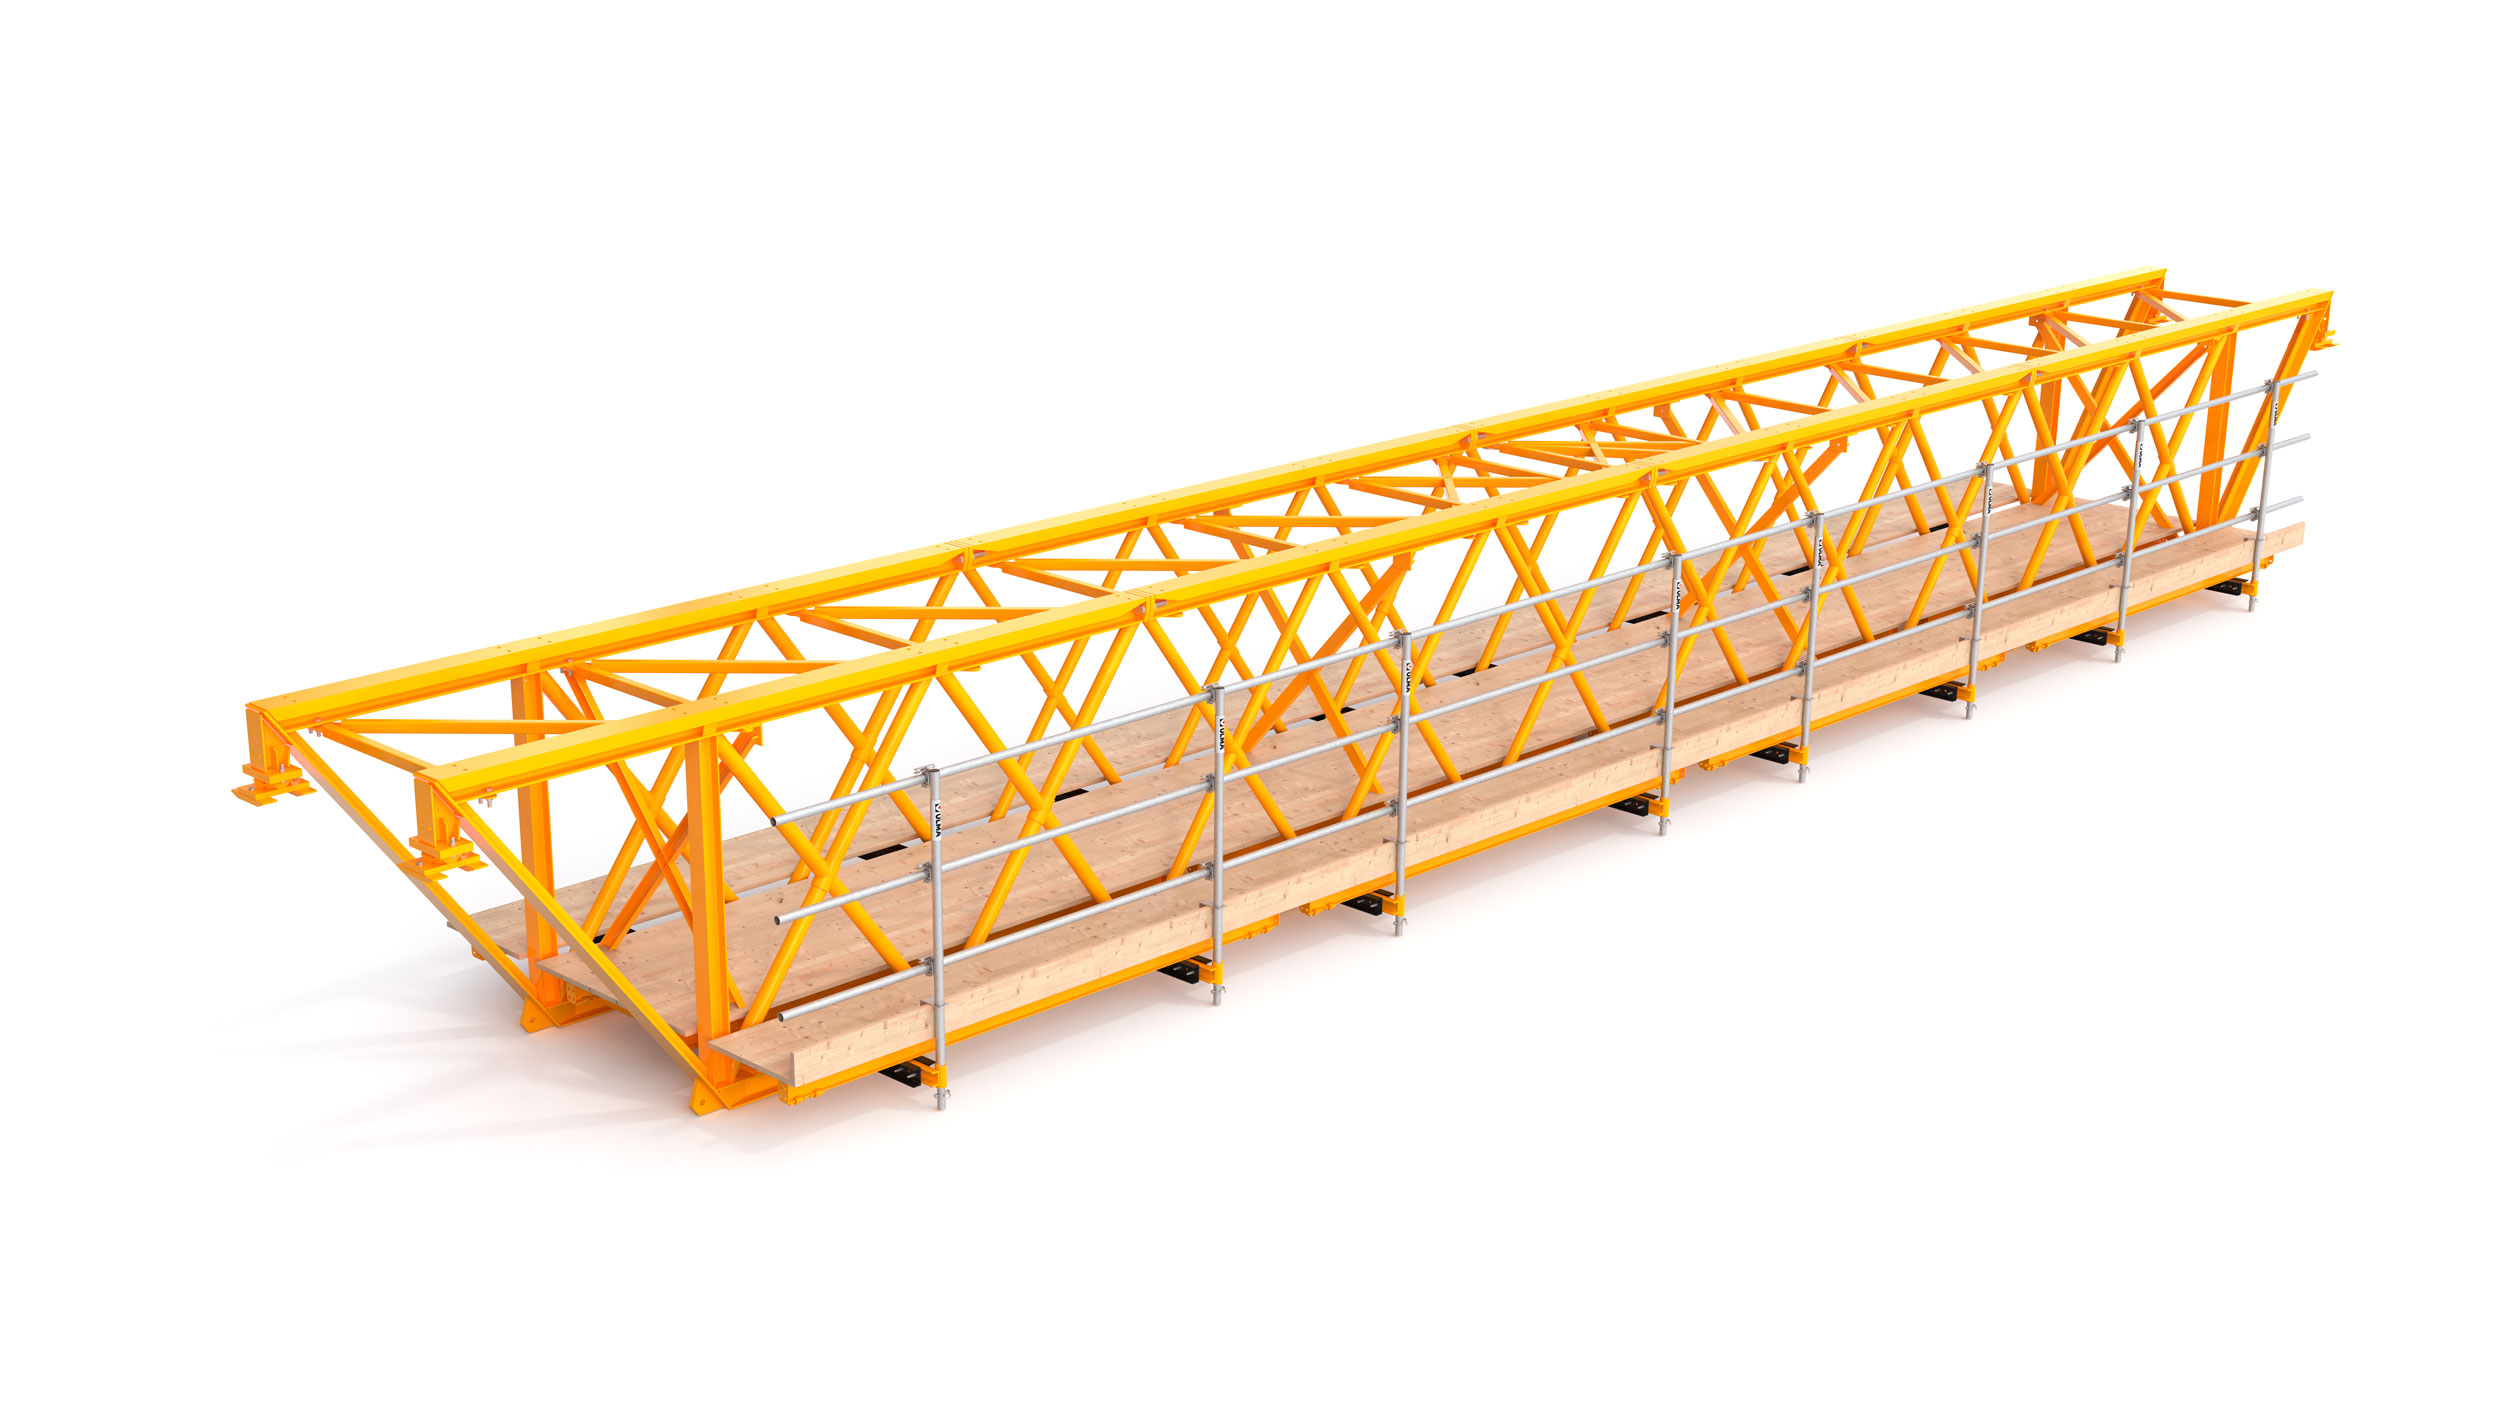 Sistema de treliças modulares para construções de betão com grandes vãos entre apoios. Se destaca por necessitar de um número mínimo de apoios no solo, facilidade de montagem e movimentação. 
Desenvolvida principalmente para obras de infraestrutura.